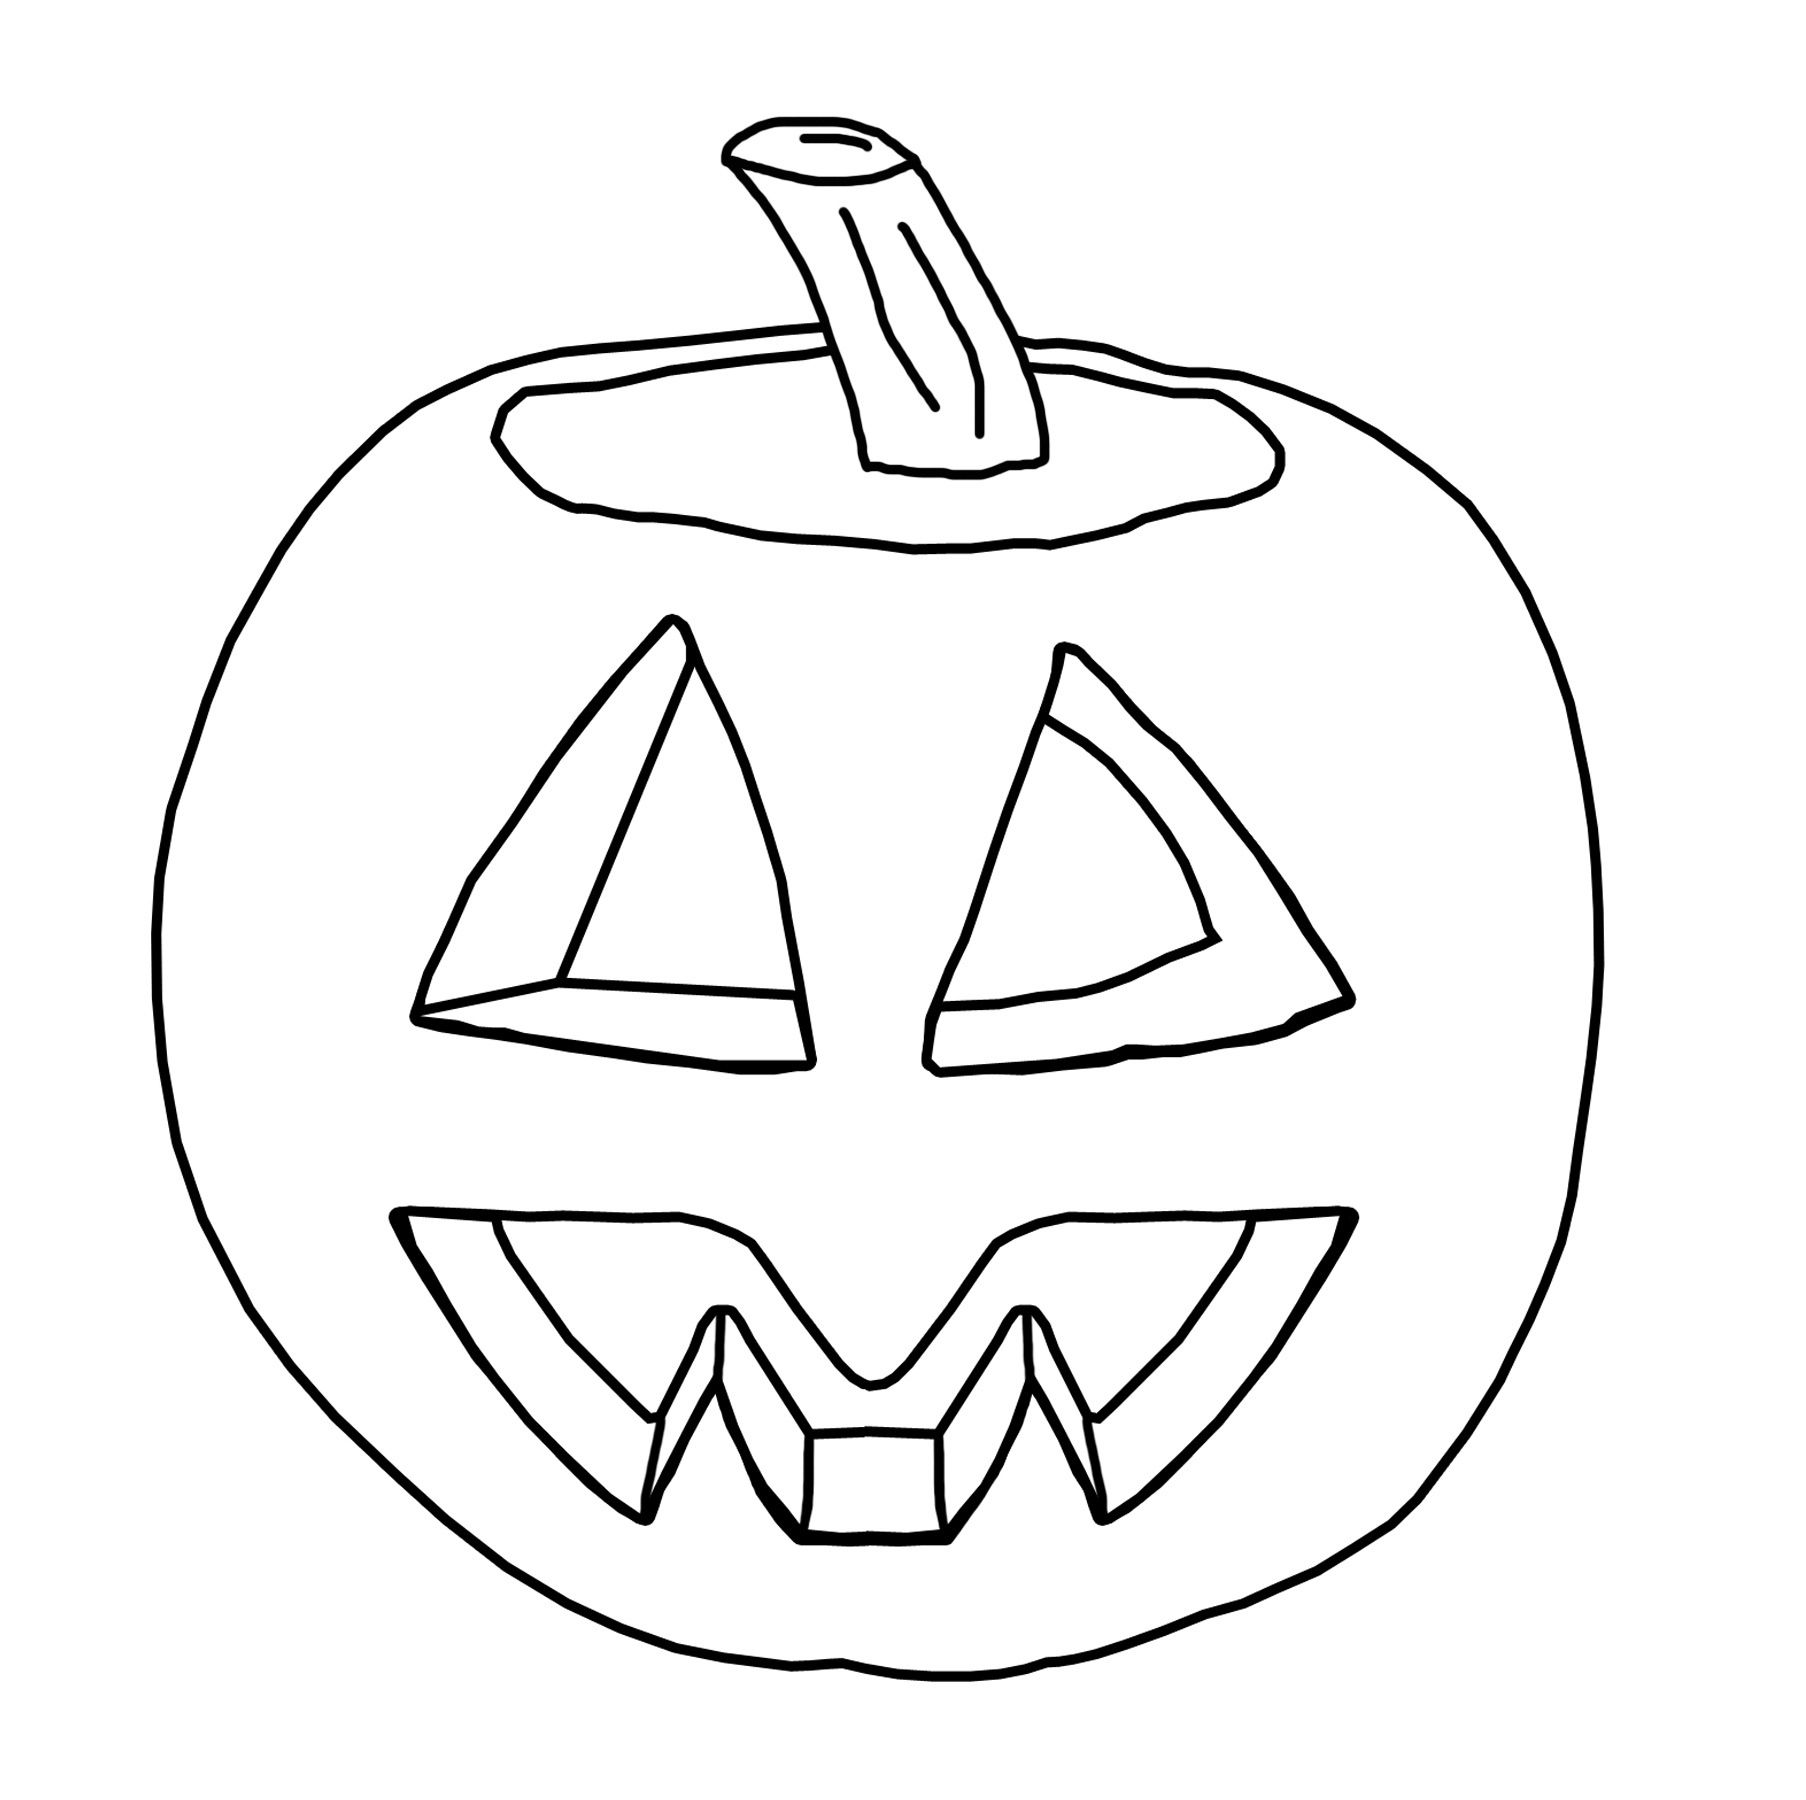 Free Halloween Jack O Lantern Coloring Pages Jack O Lantern ...